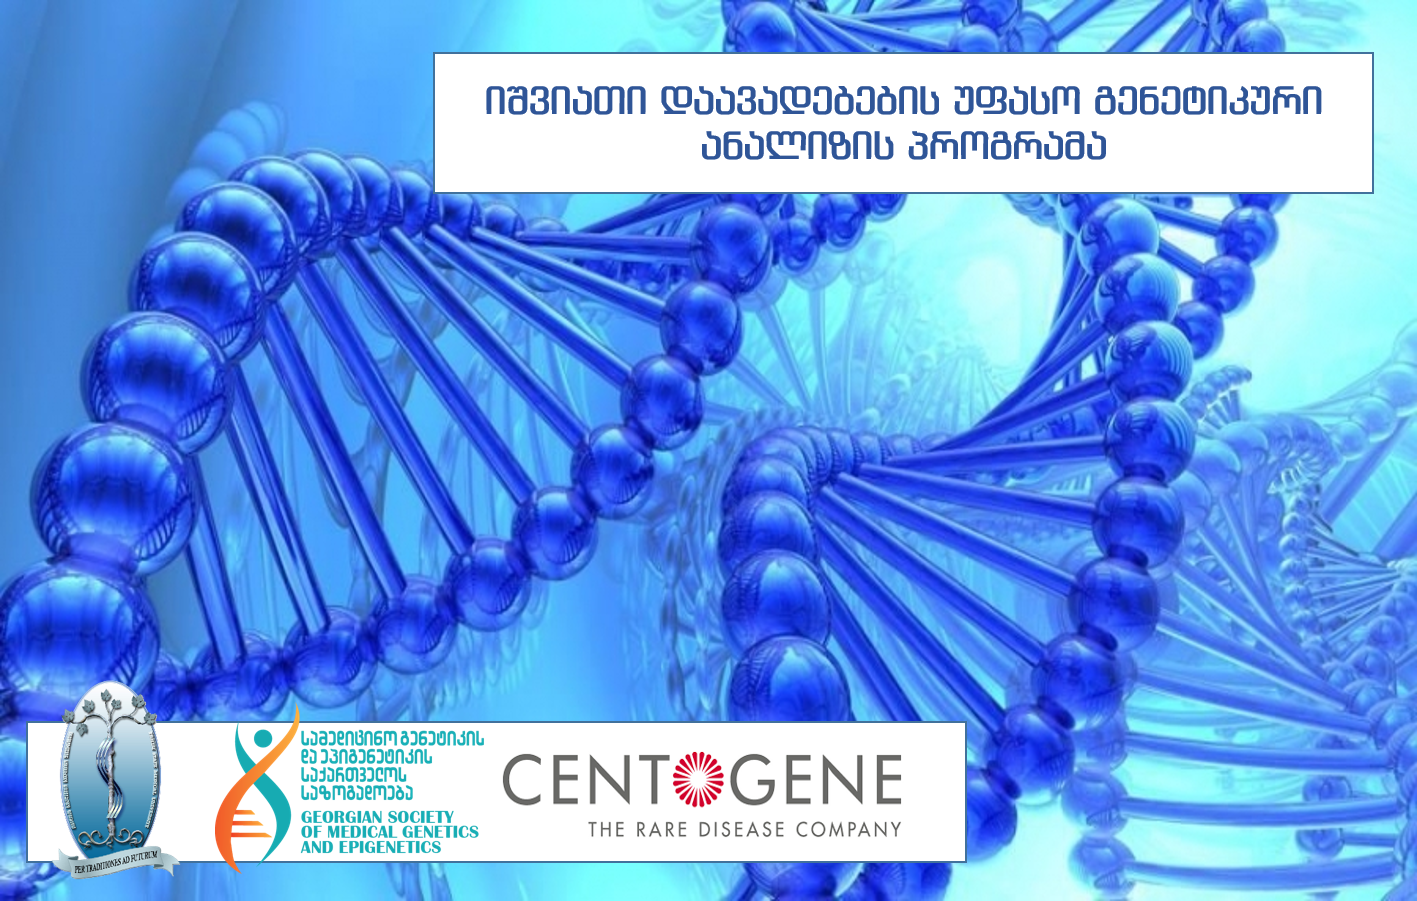 იშვიათი დაავადებების უფასო გენეტიკური ანალიზის პროგრამა თსსუ-ის გ. ჟვანის სახელობის პედიატრიულ კლინიკაში (ბიომარკერების კლინიკური კვლევა)